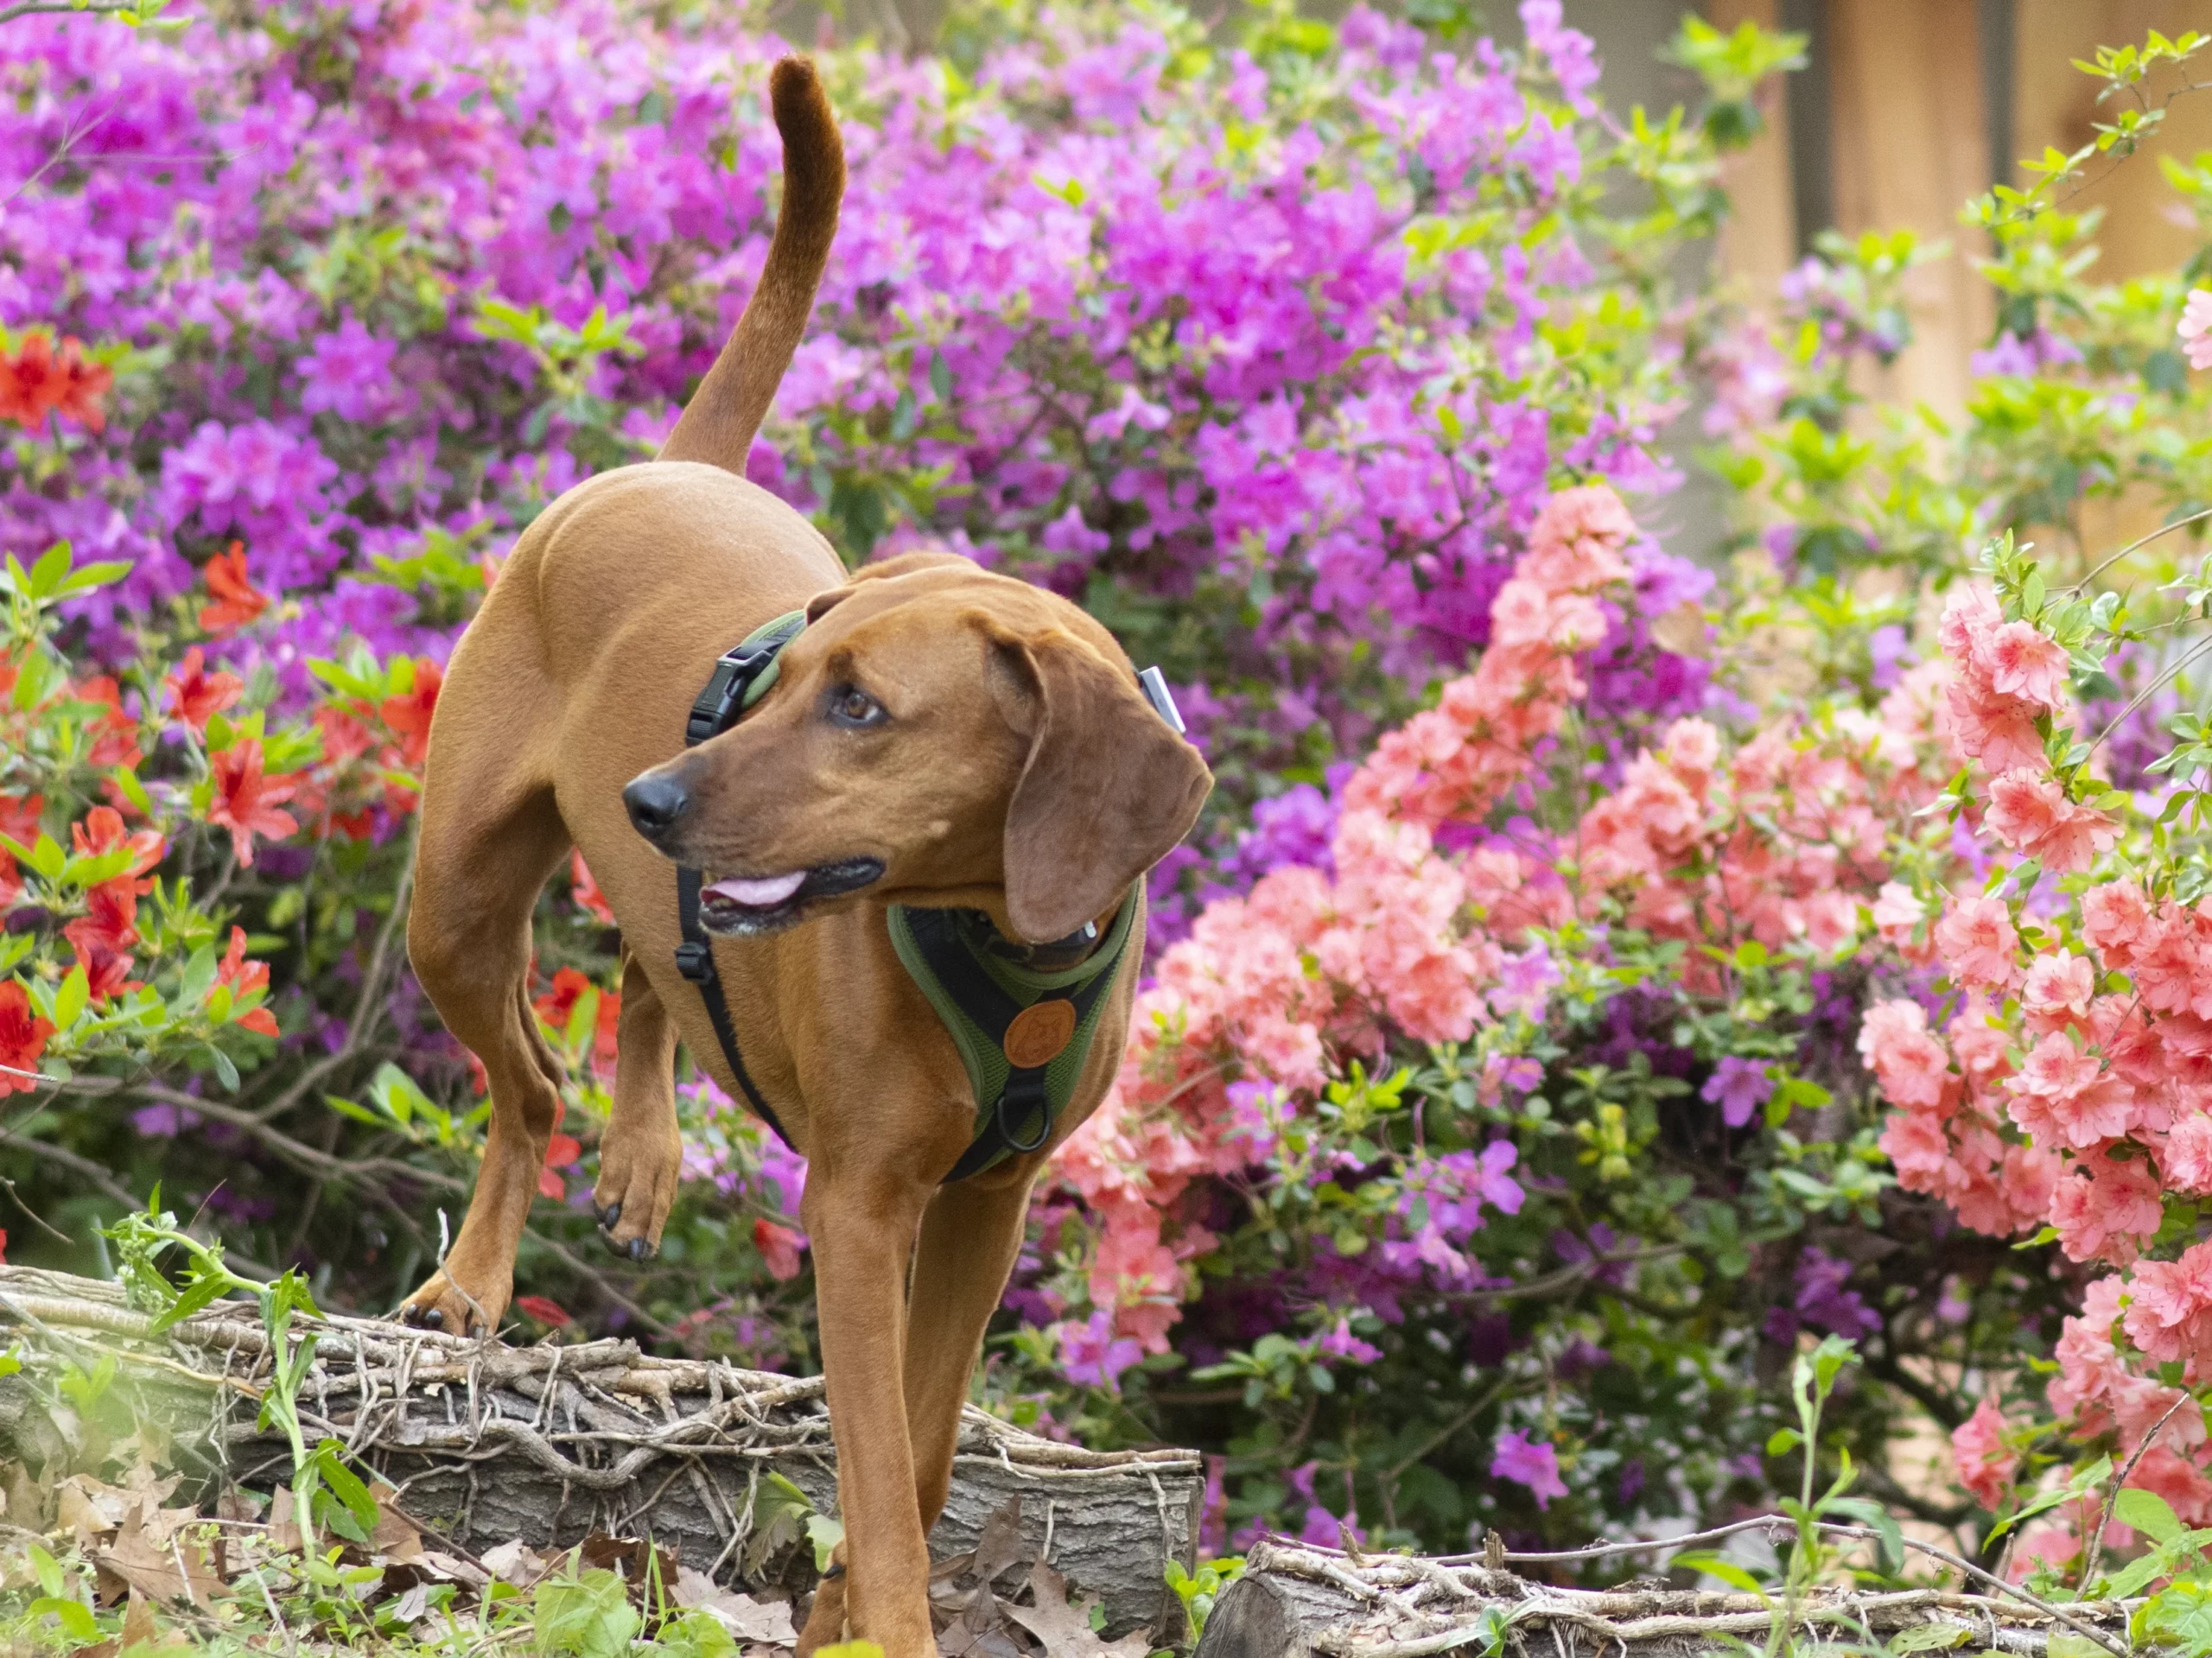 Shelby redbone coonhound hound wearing olive green wilderdog harness